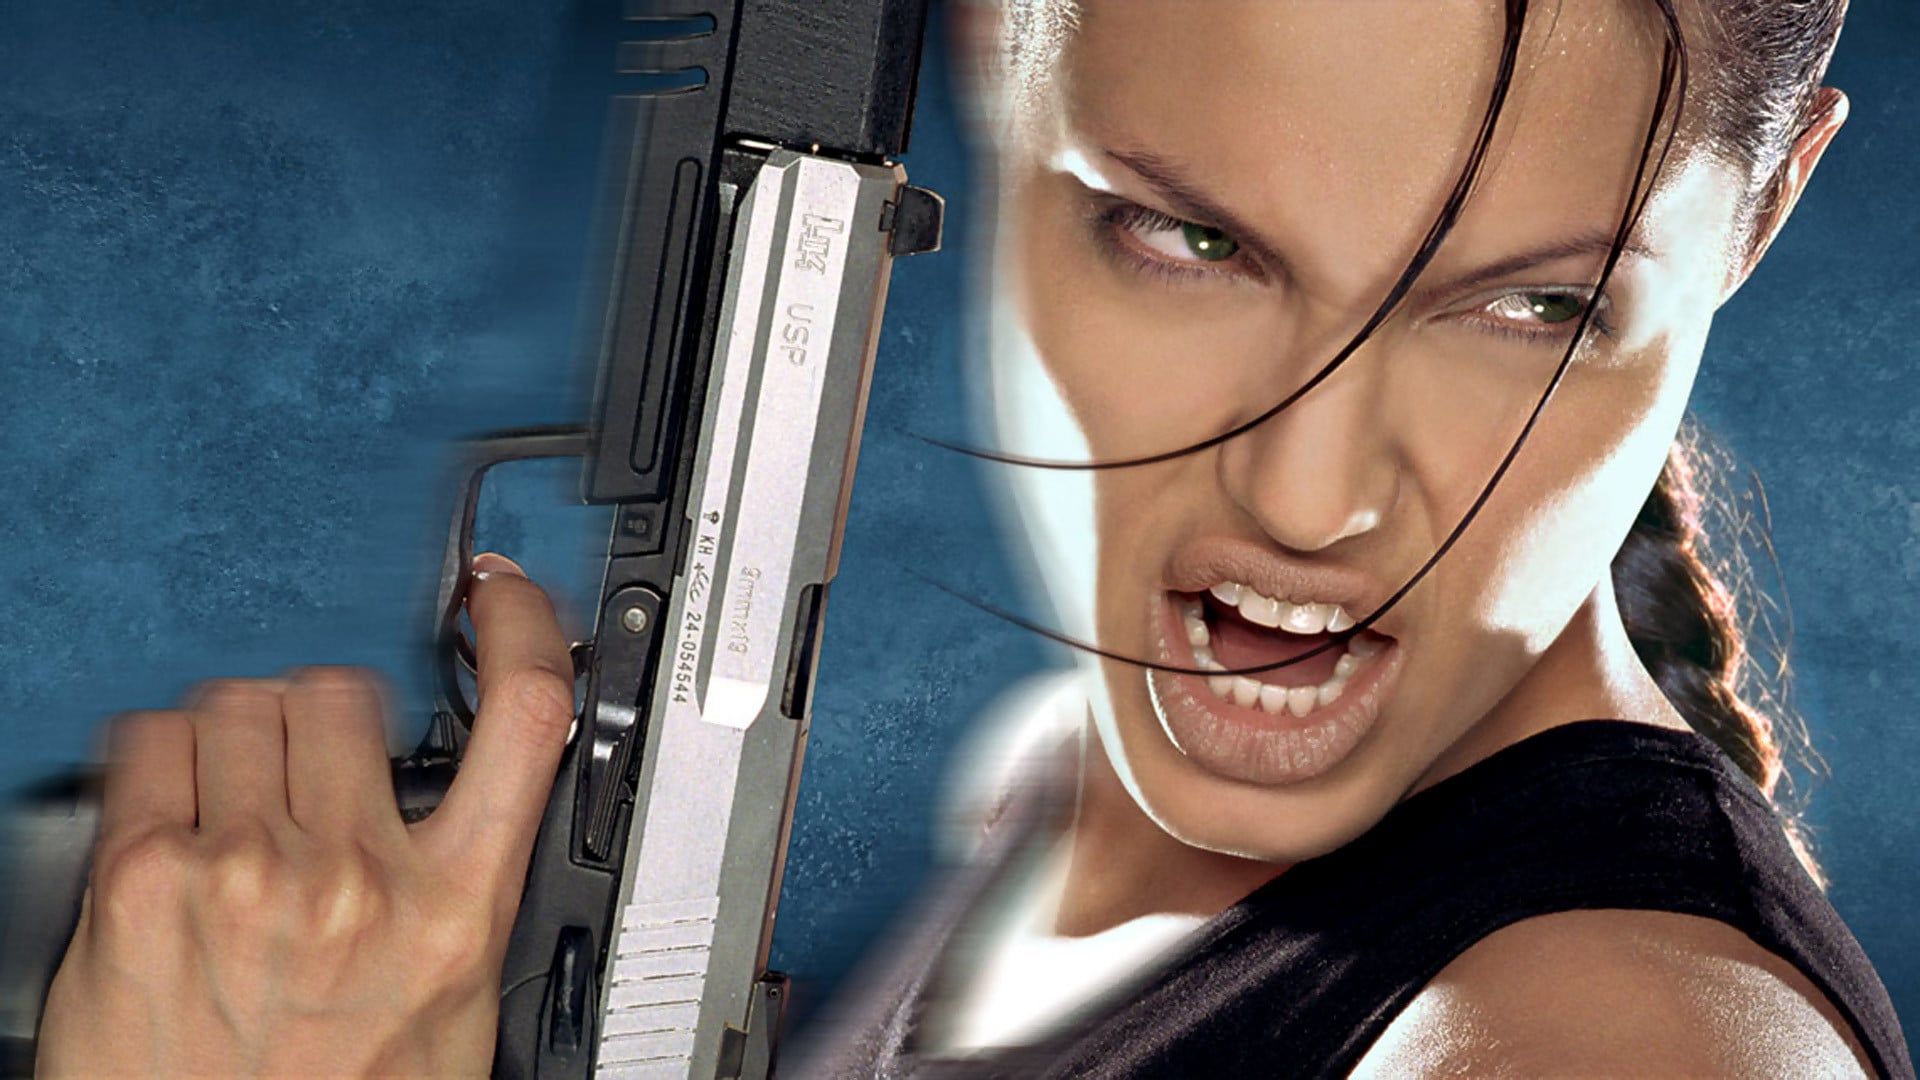 دانلود فیلم Lara Croft: Tomb Raider 2001